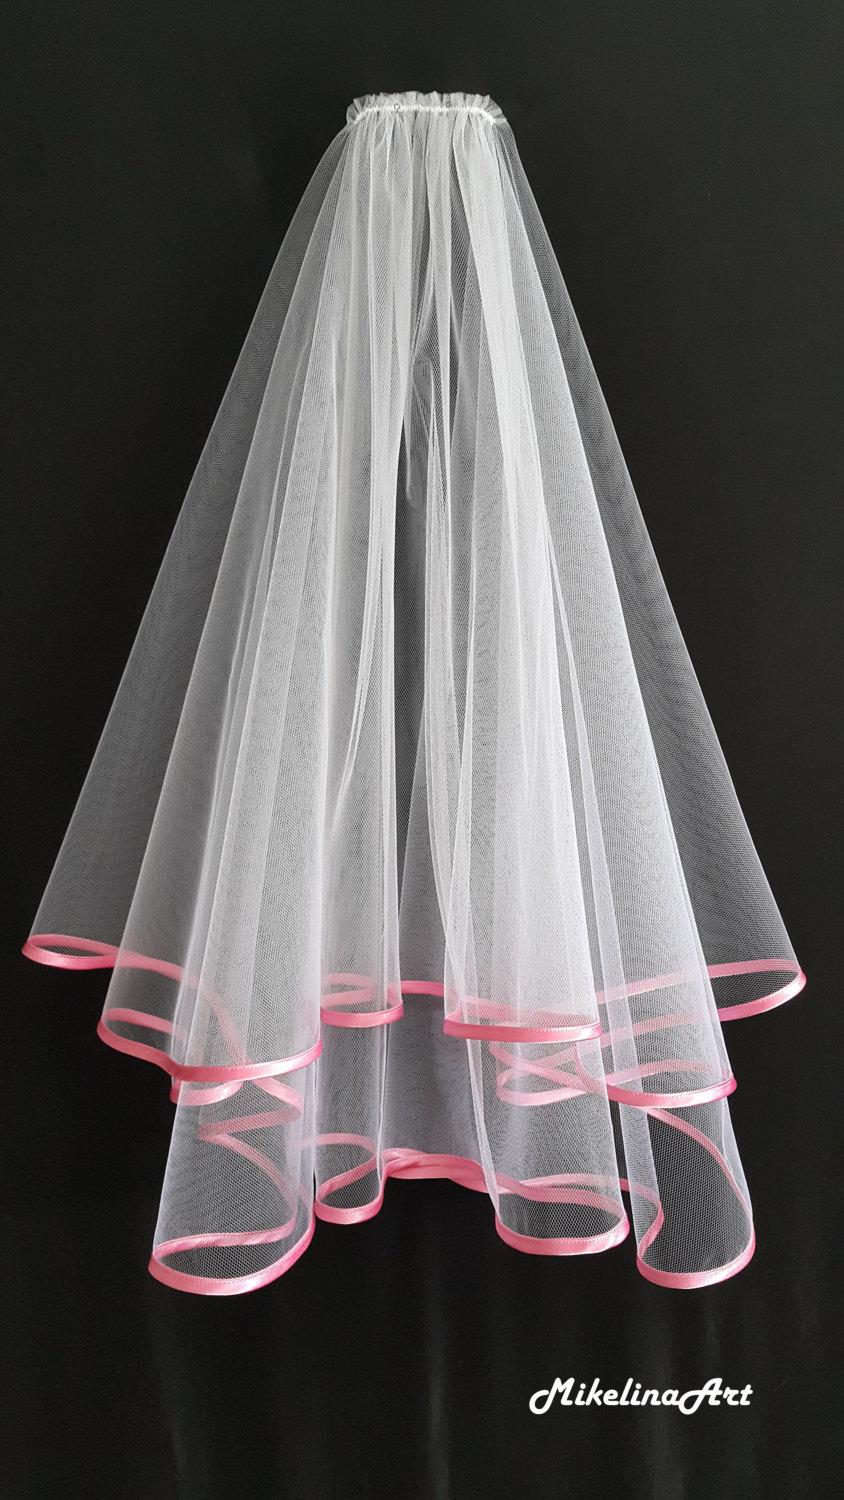 Hochzeit - White Wedding Veil, Two Layers, Pink Satin Edging.